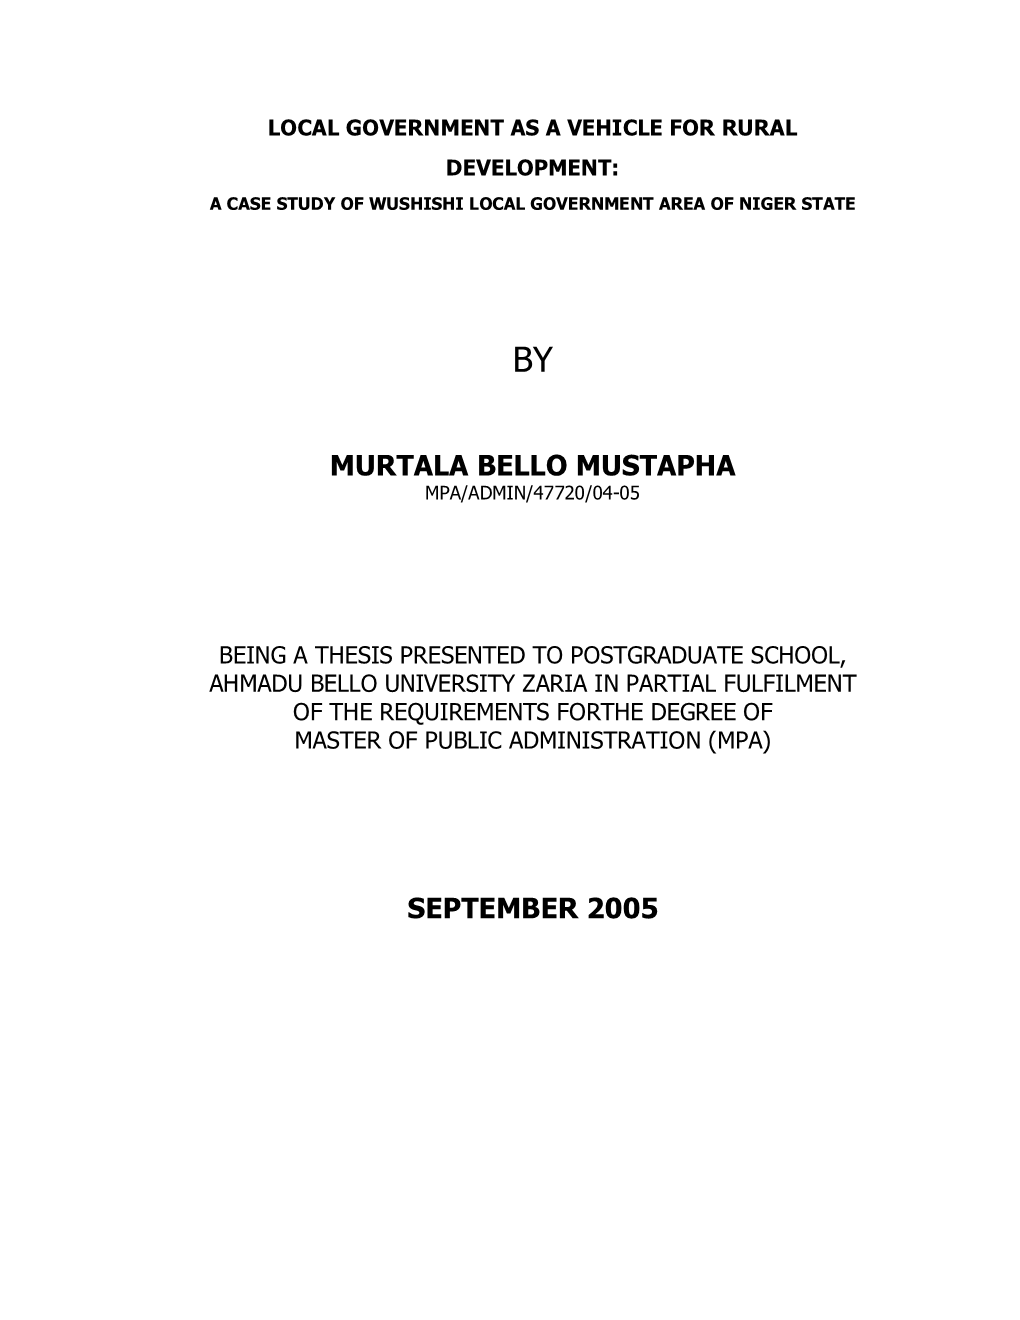 Murtala Bello Mustapha September 2005